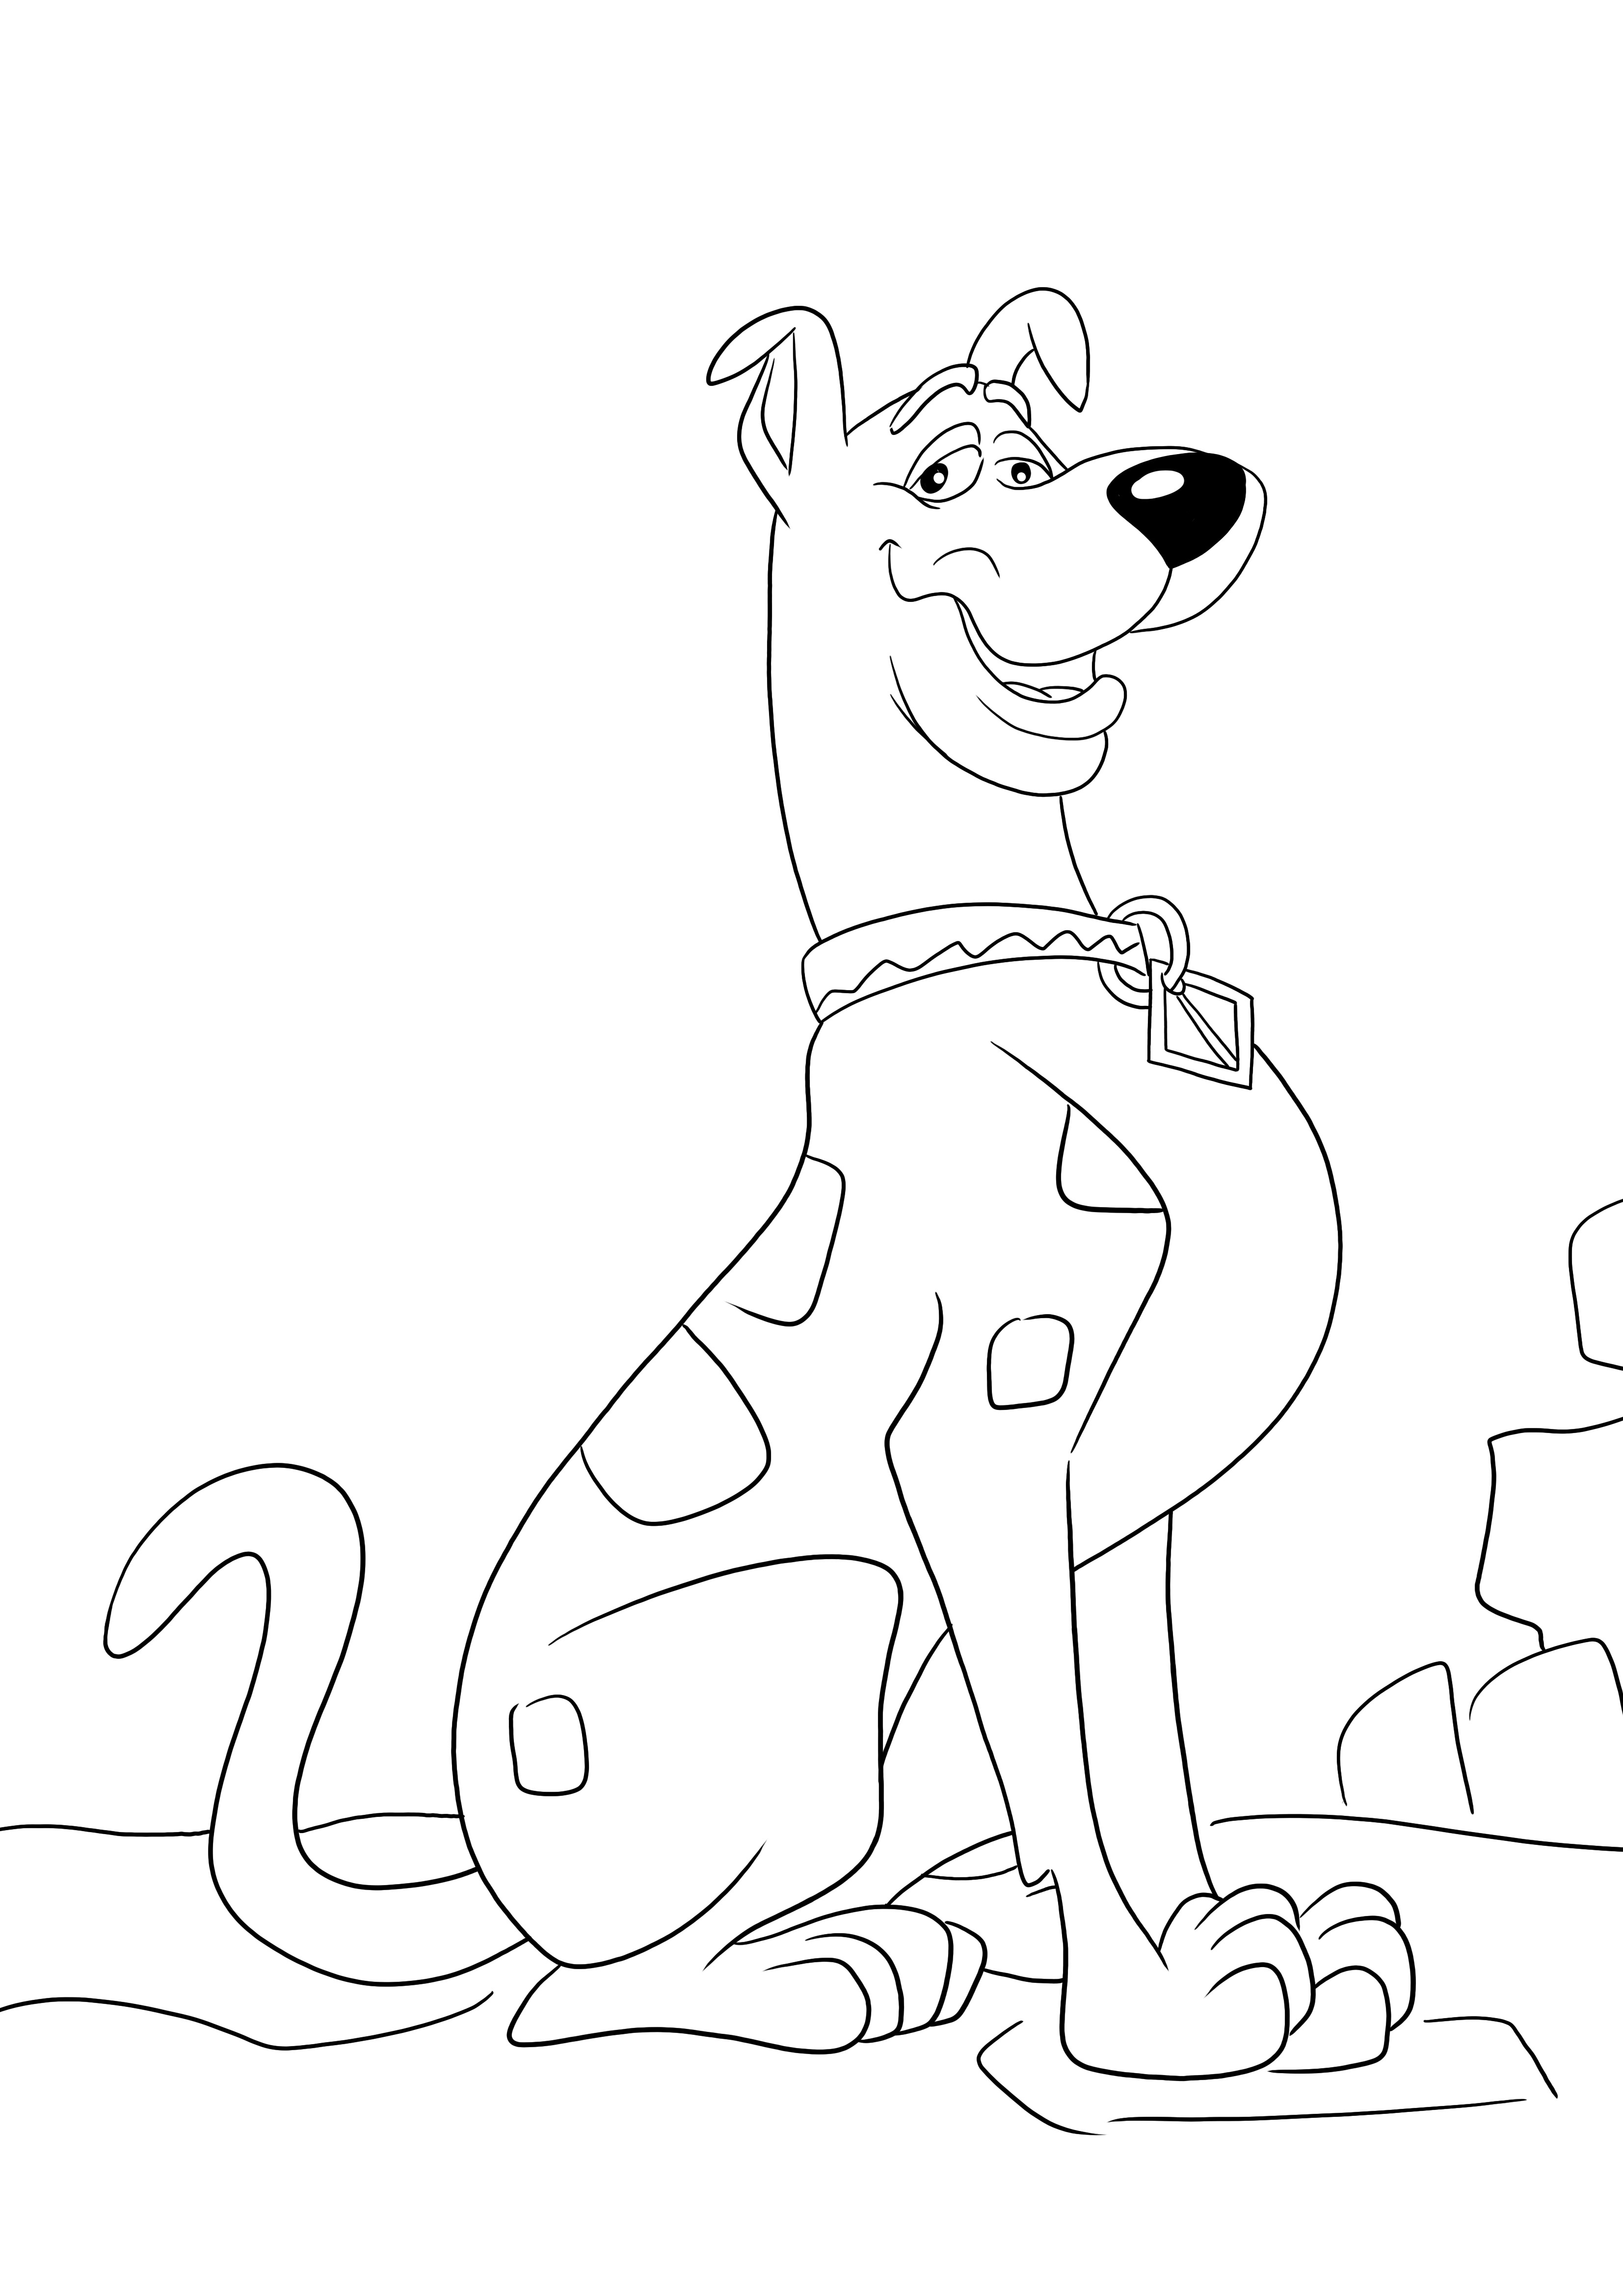 Ecco un'immagine da colorare gratuita del subdolo Scooby Doo da stampare e colorare facilmente